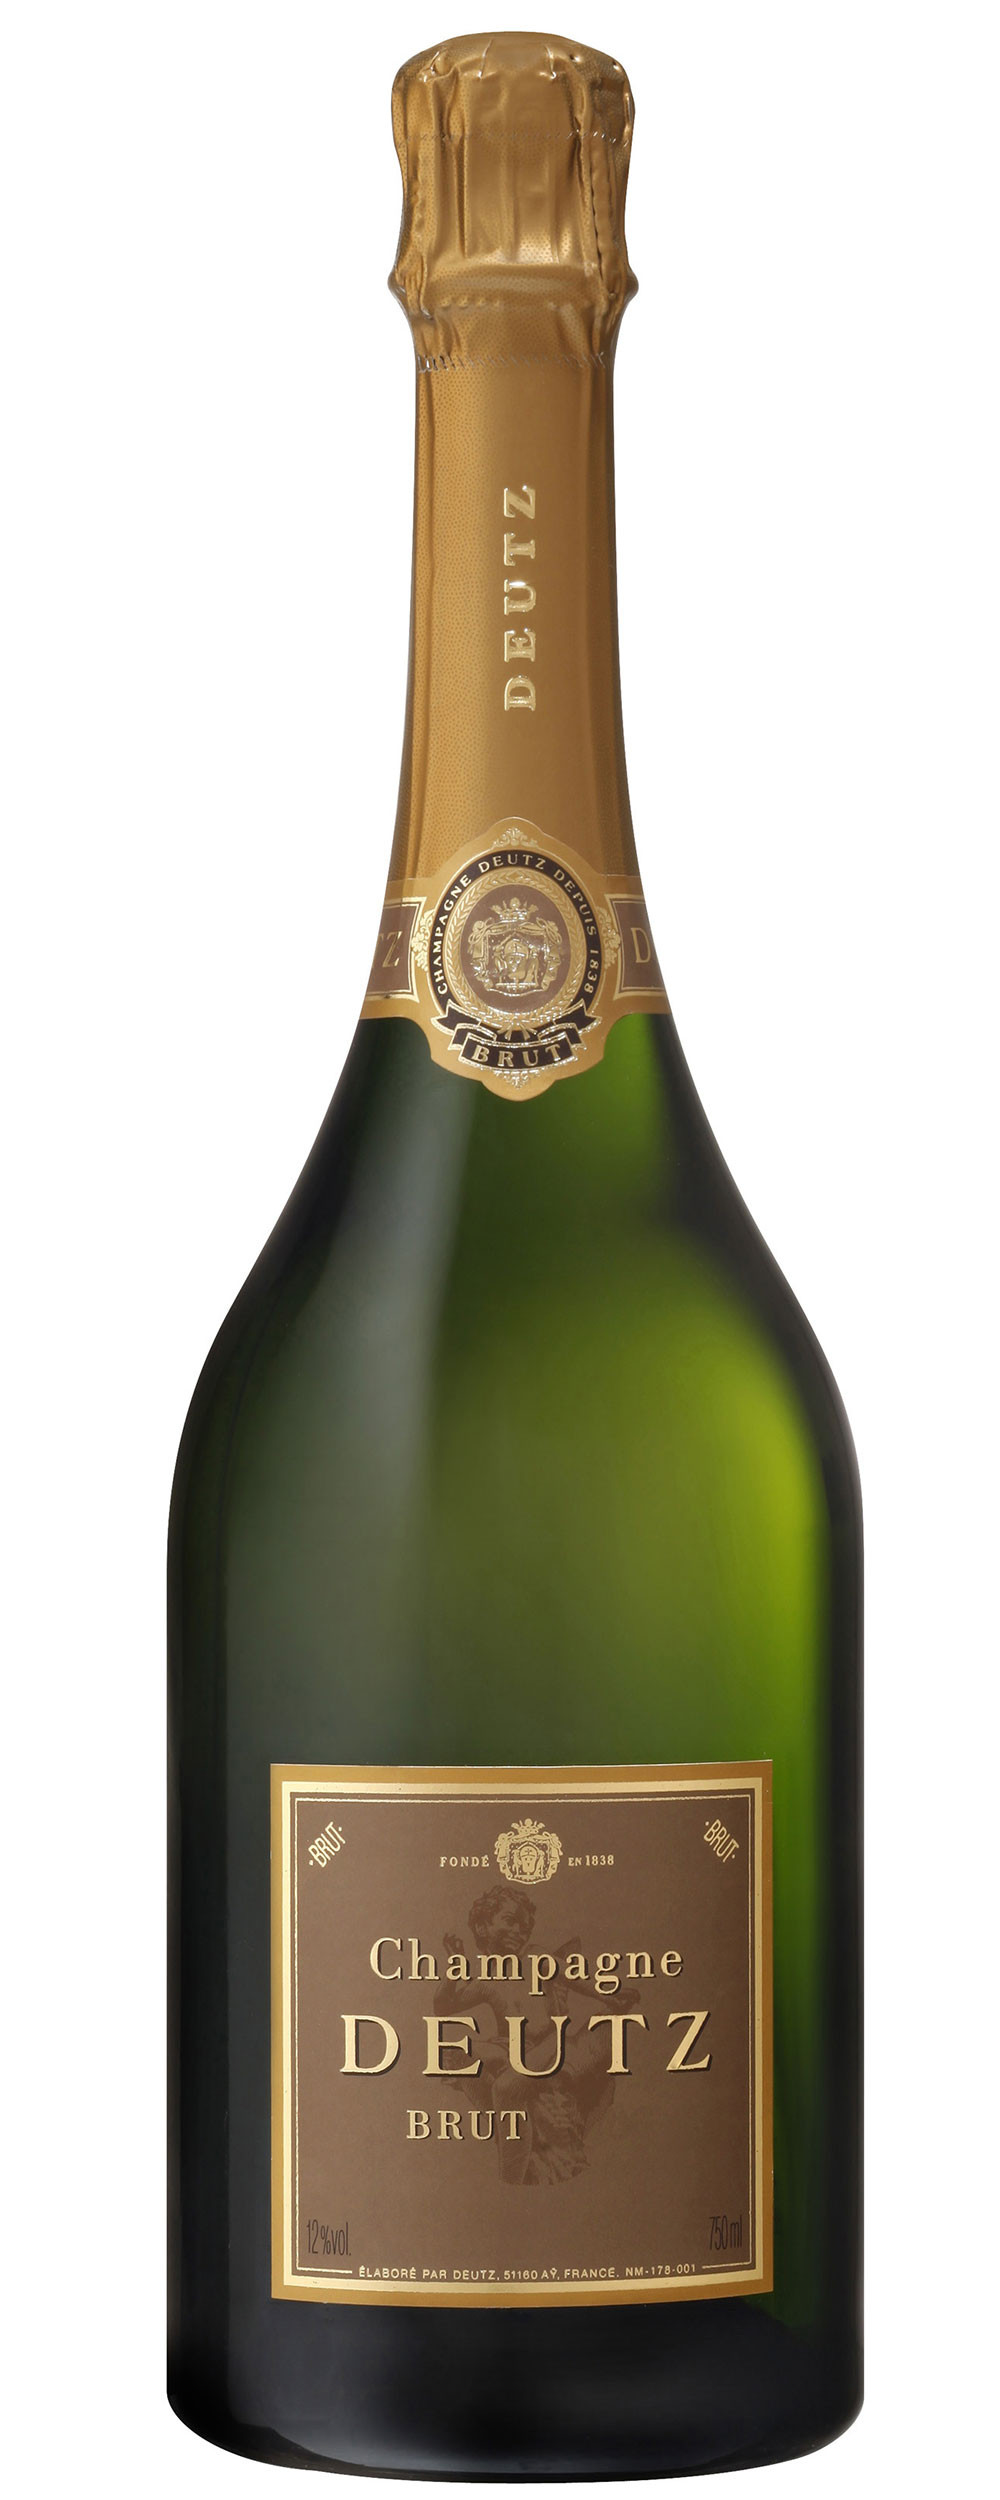 Deutz Champagne Millésimé brut 2015